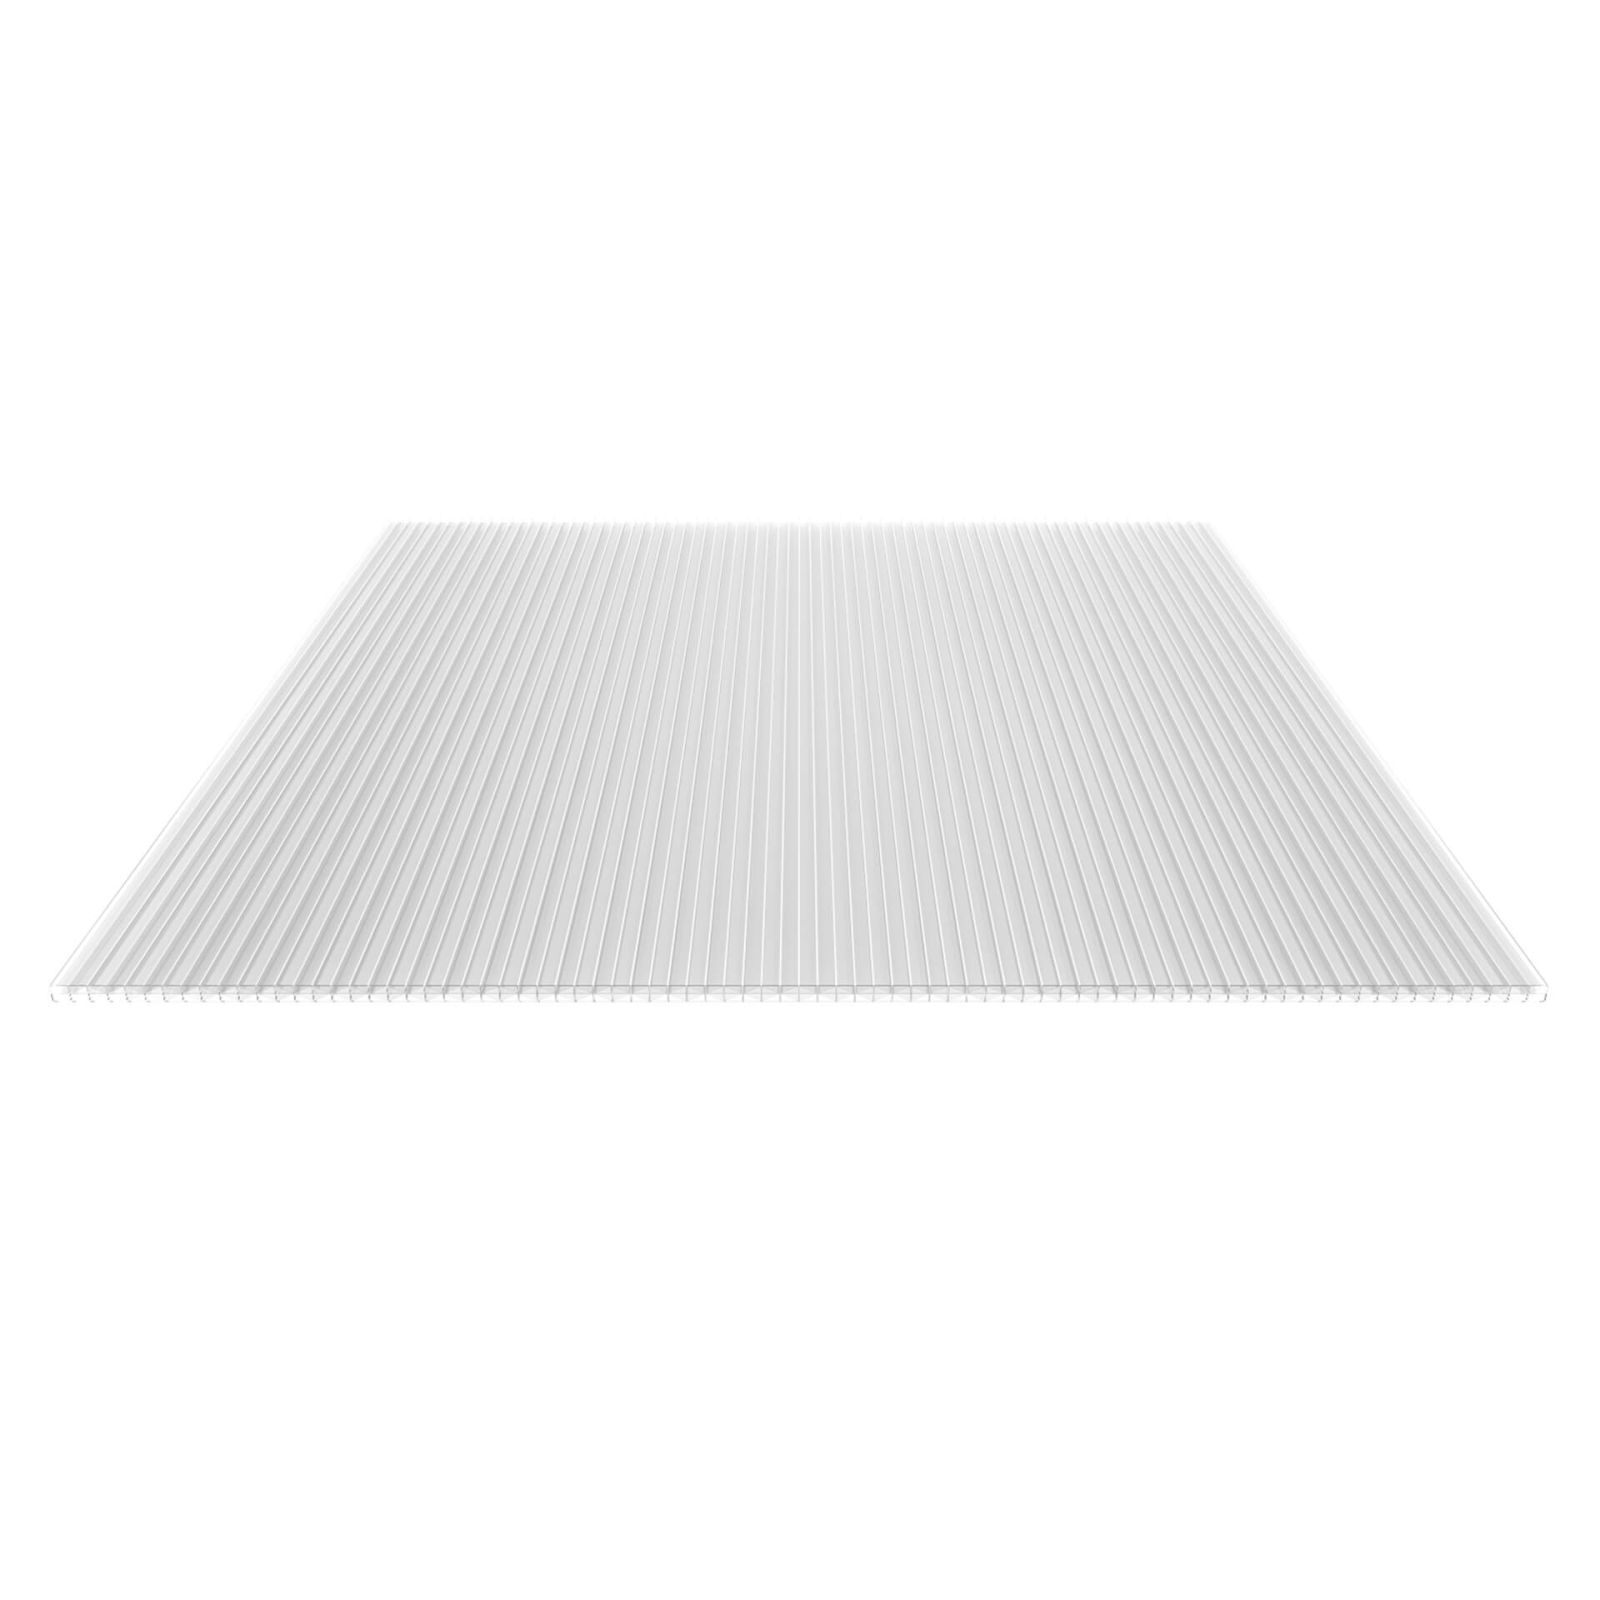 Polycarbonat Stegplatte | 16 mm | Profil Mendiger | Sparpaket | Plattenbreite 1200 mm | Klar | Extra stark | Breite 3,75 m | Länge 2,00 m #5